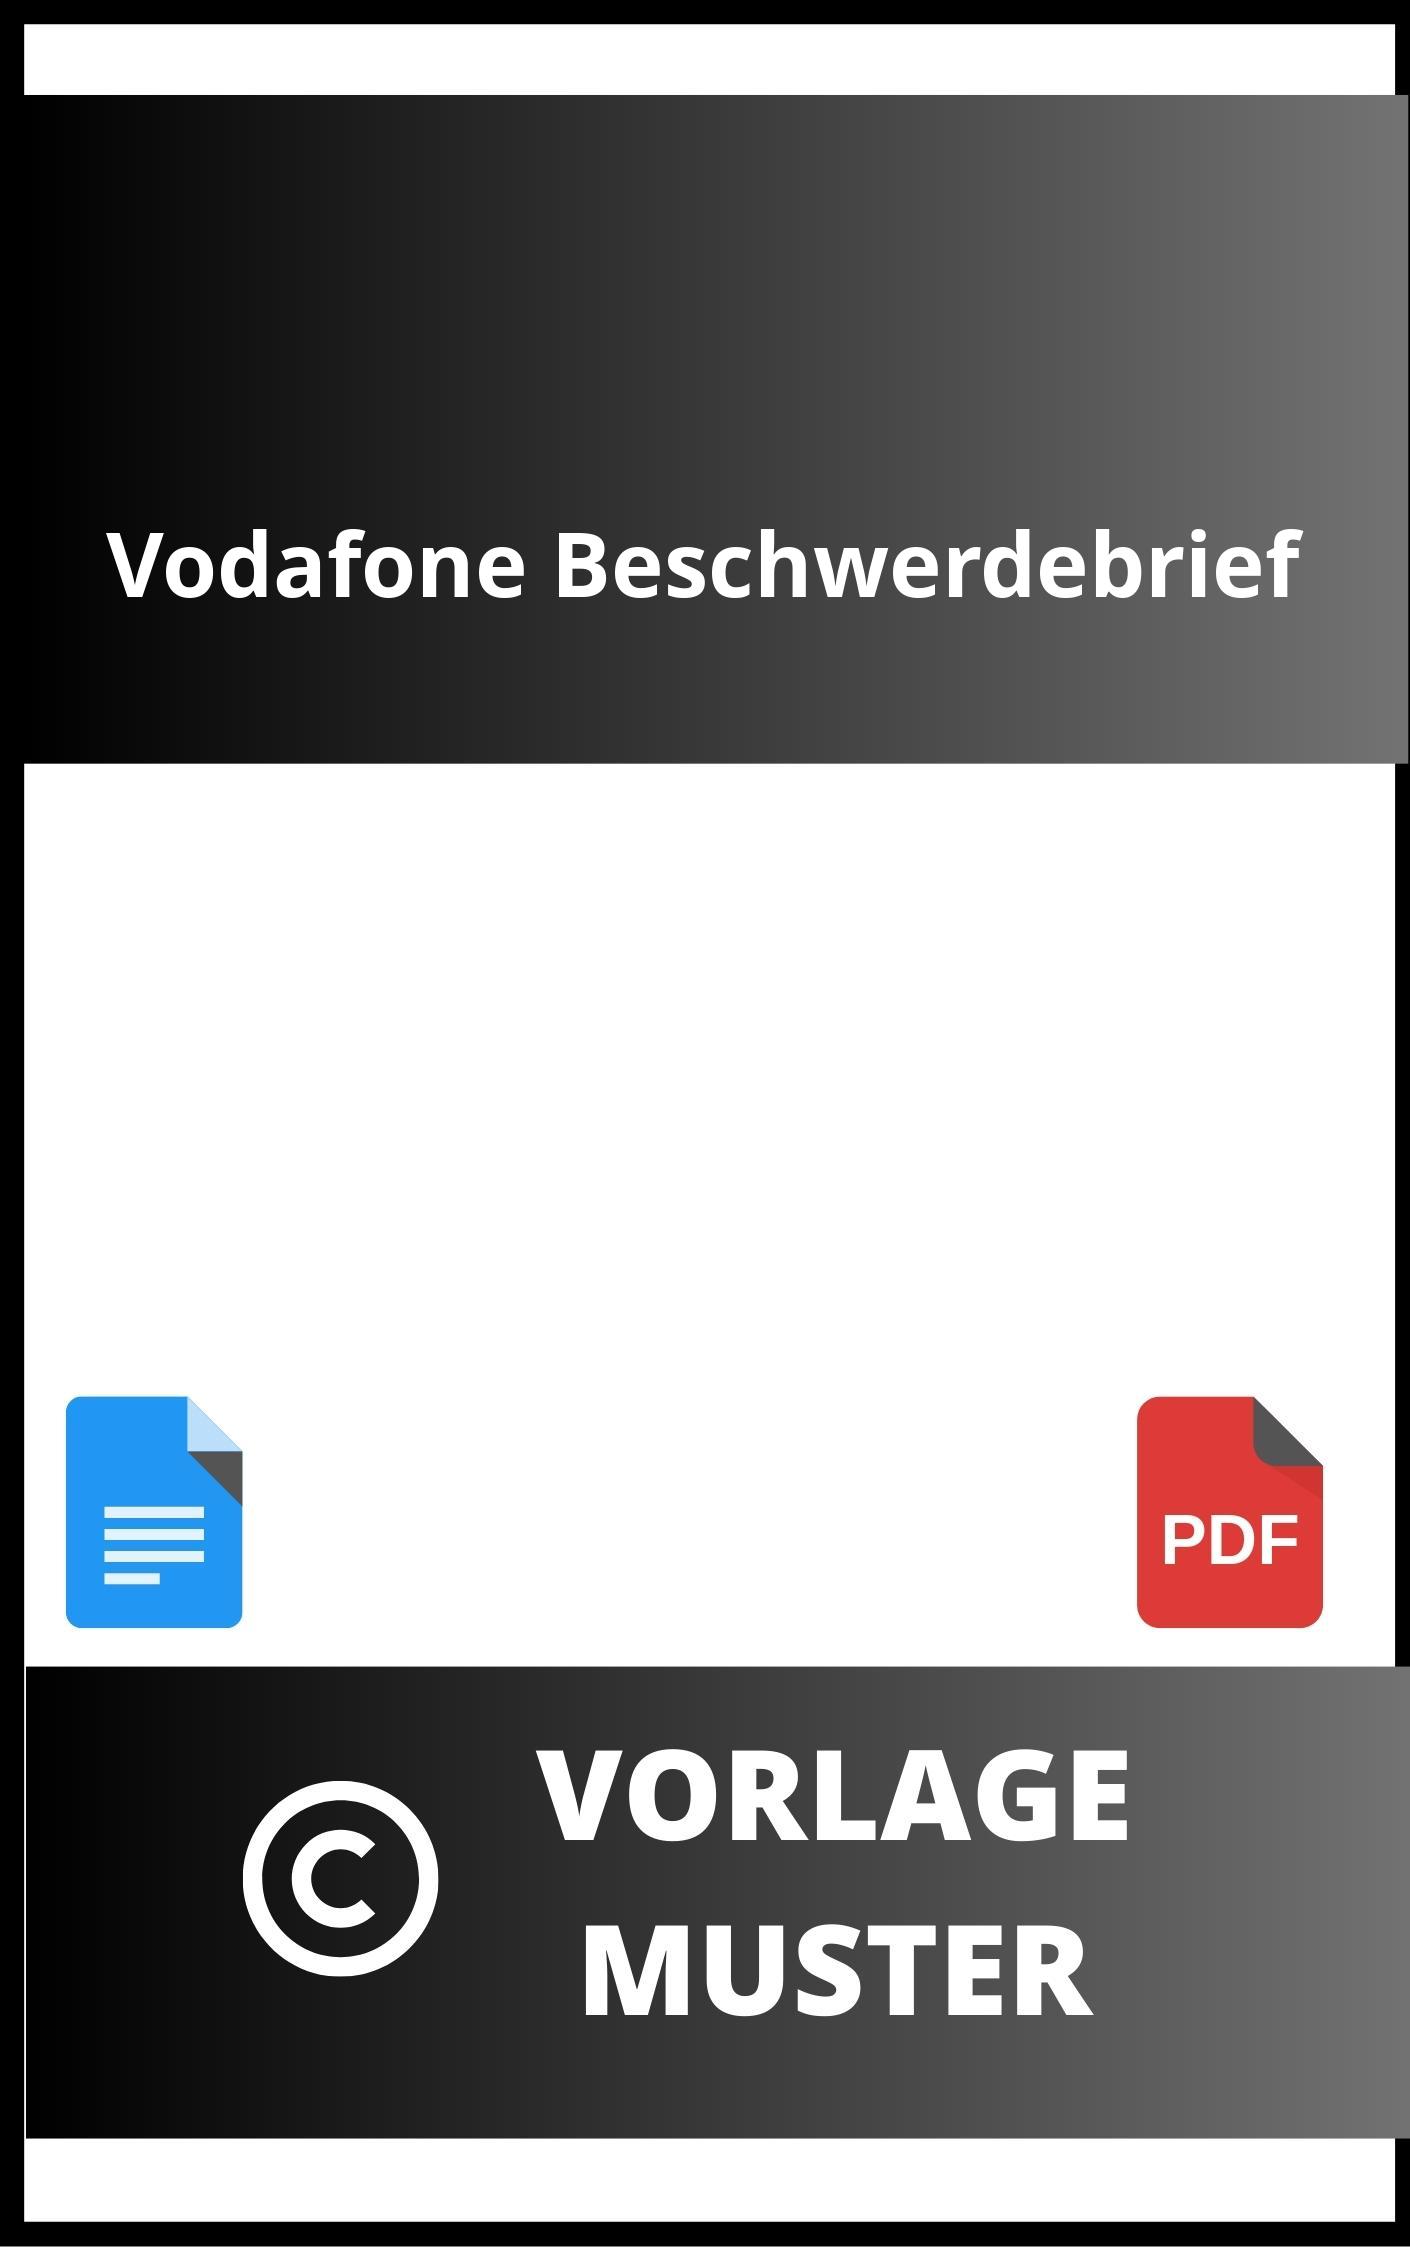 Vodafone Beschwerdebrief